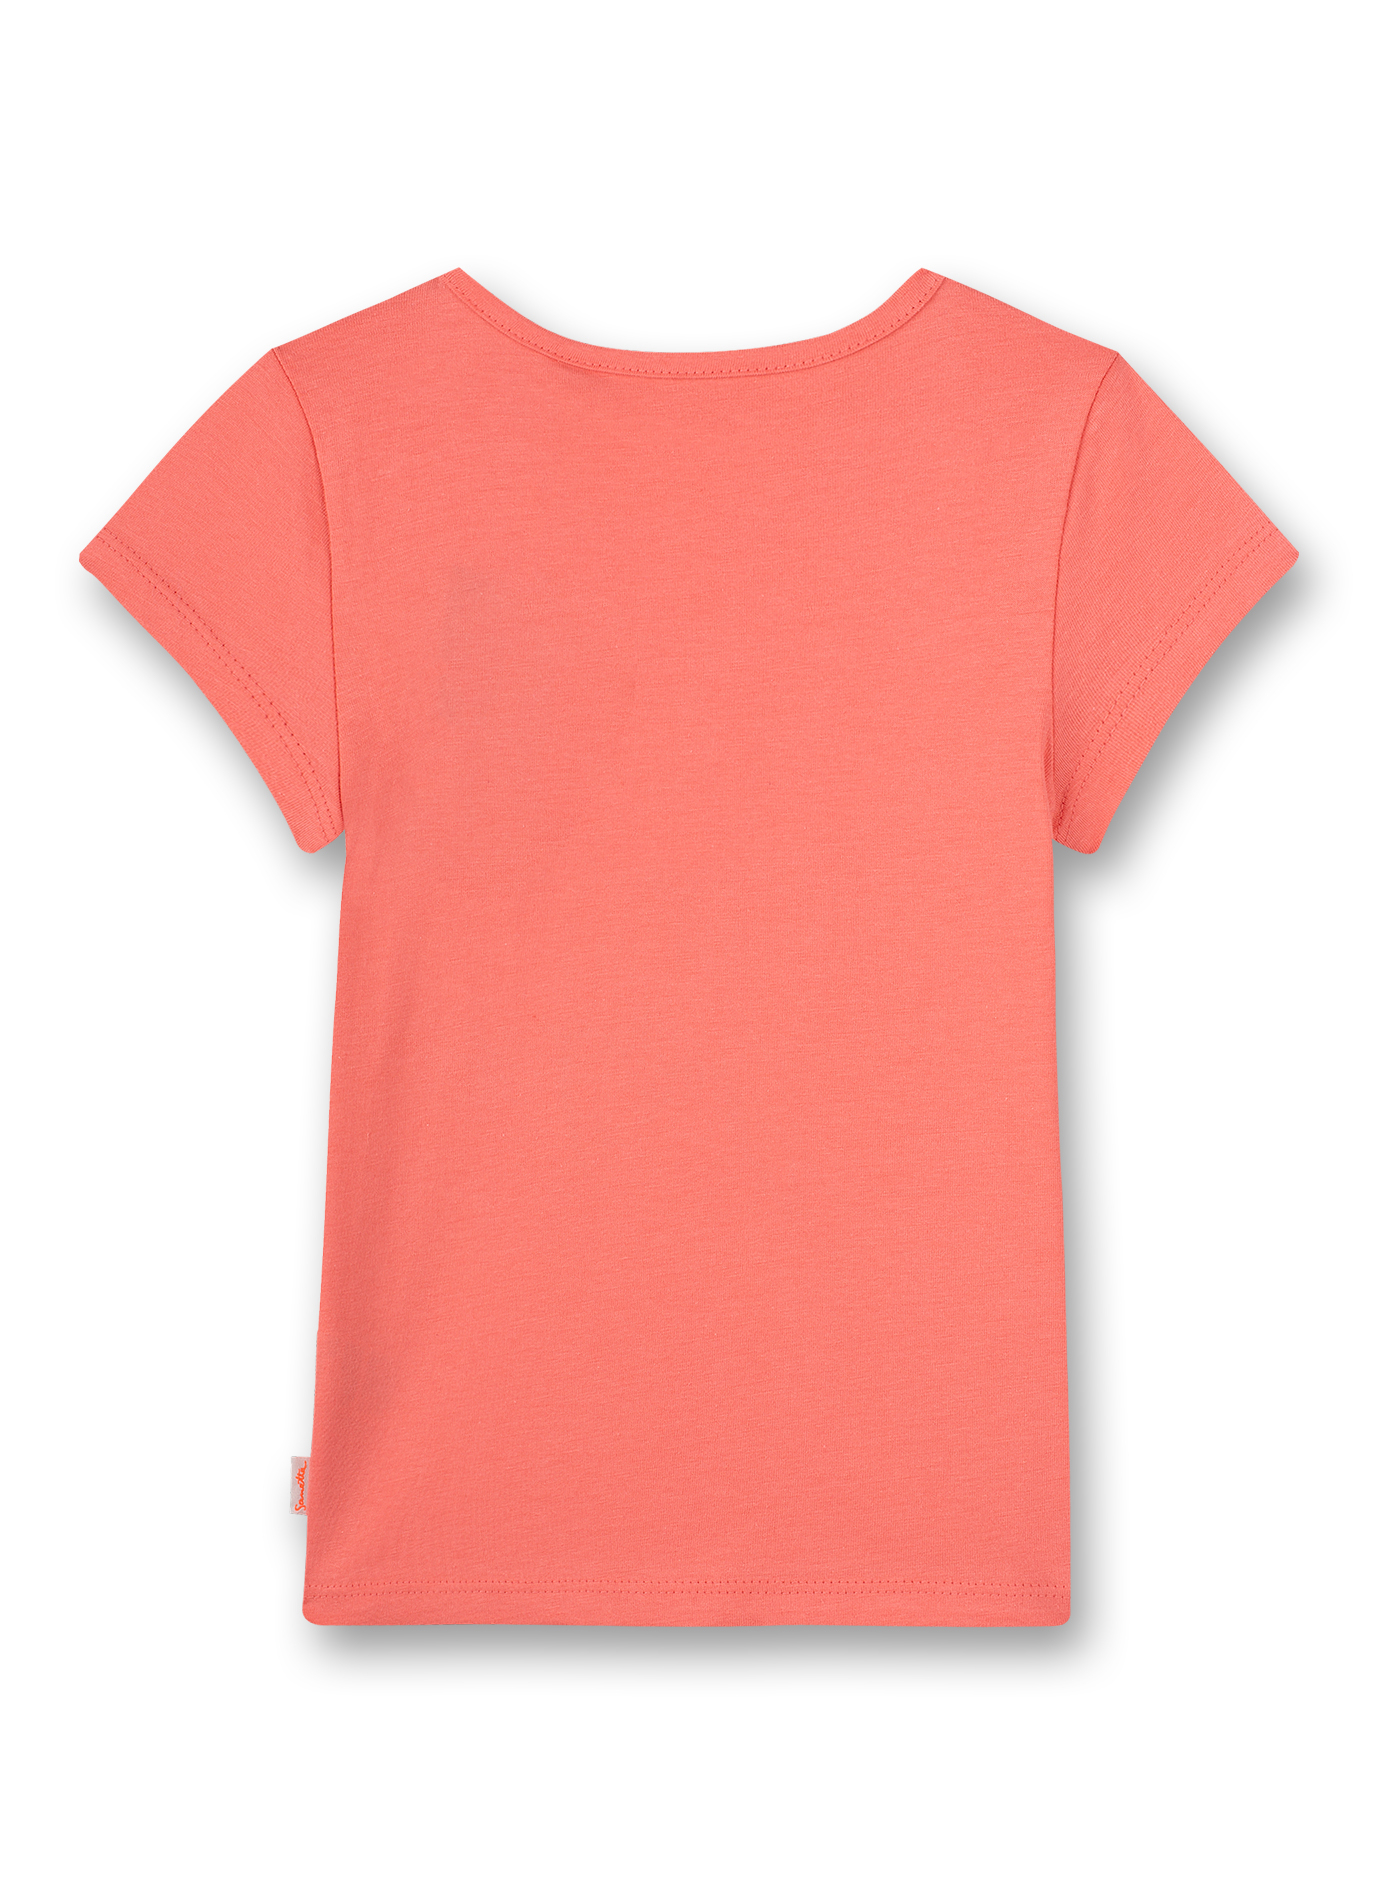 Mädchen T-Shirt Pink Tropical